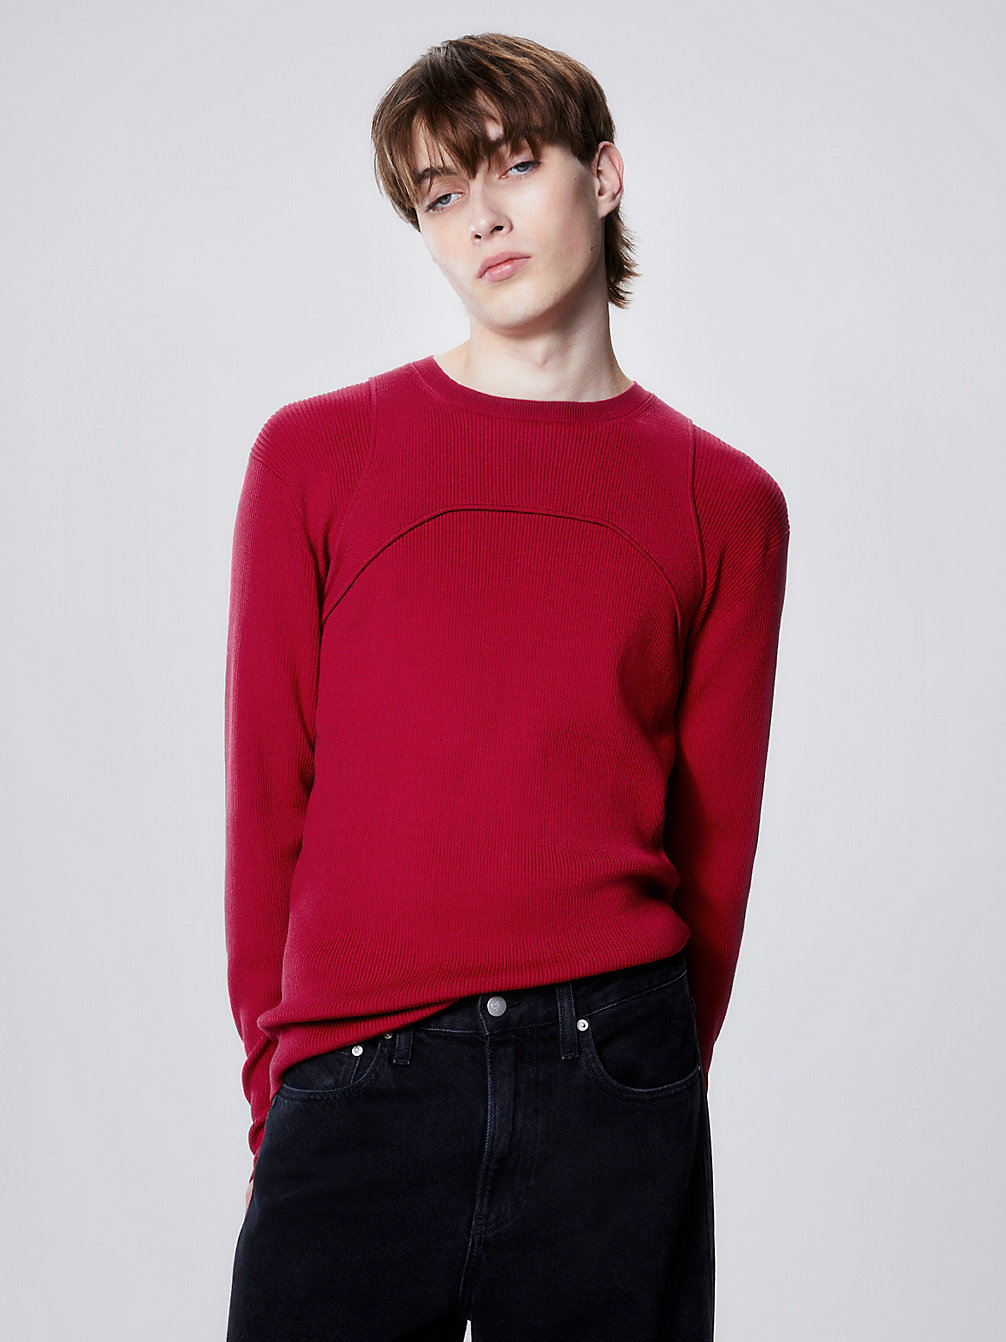 RADIANT RED > Schmaler Pullover Mit Harness-Detail > undefined Herren - Calvin Klein